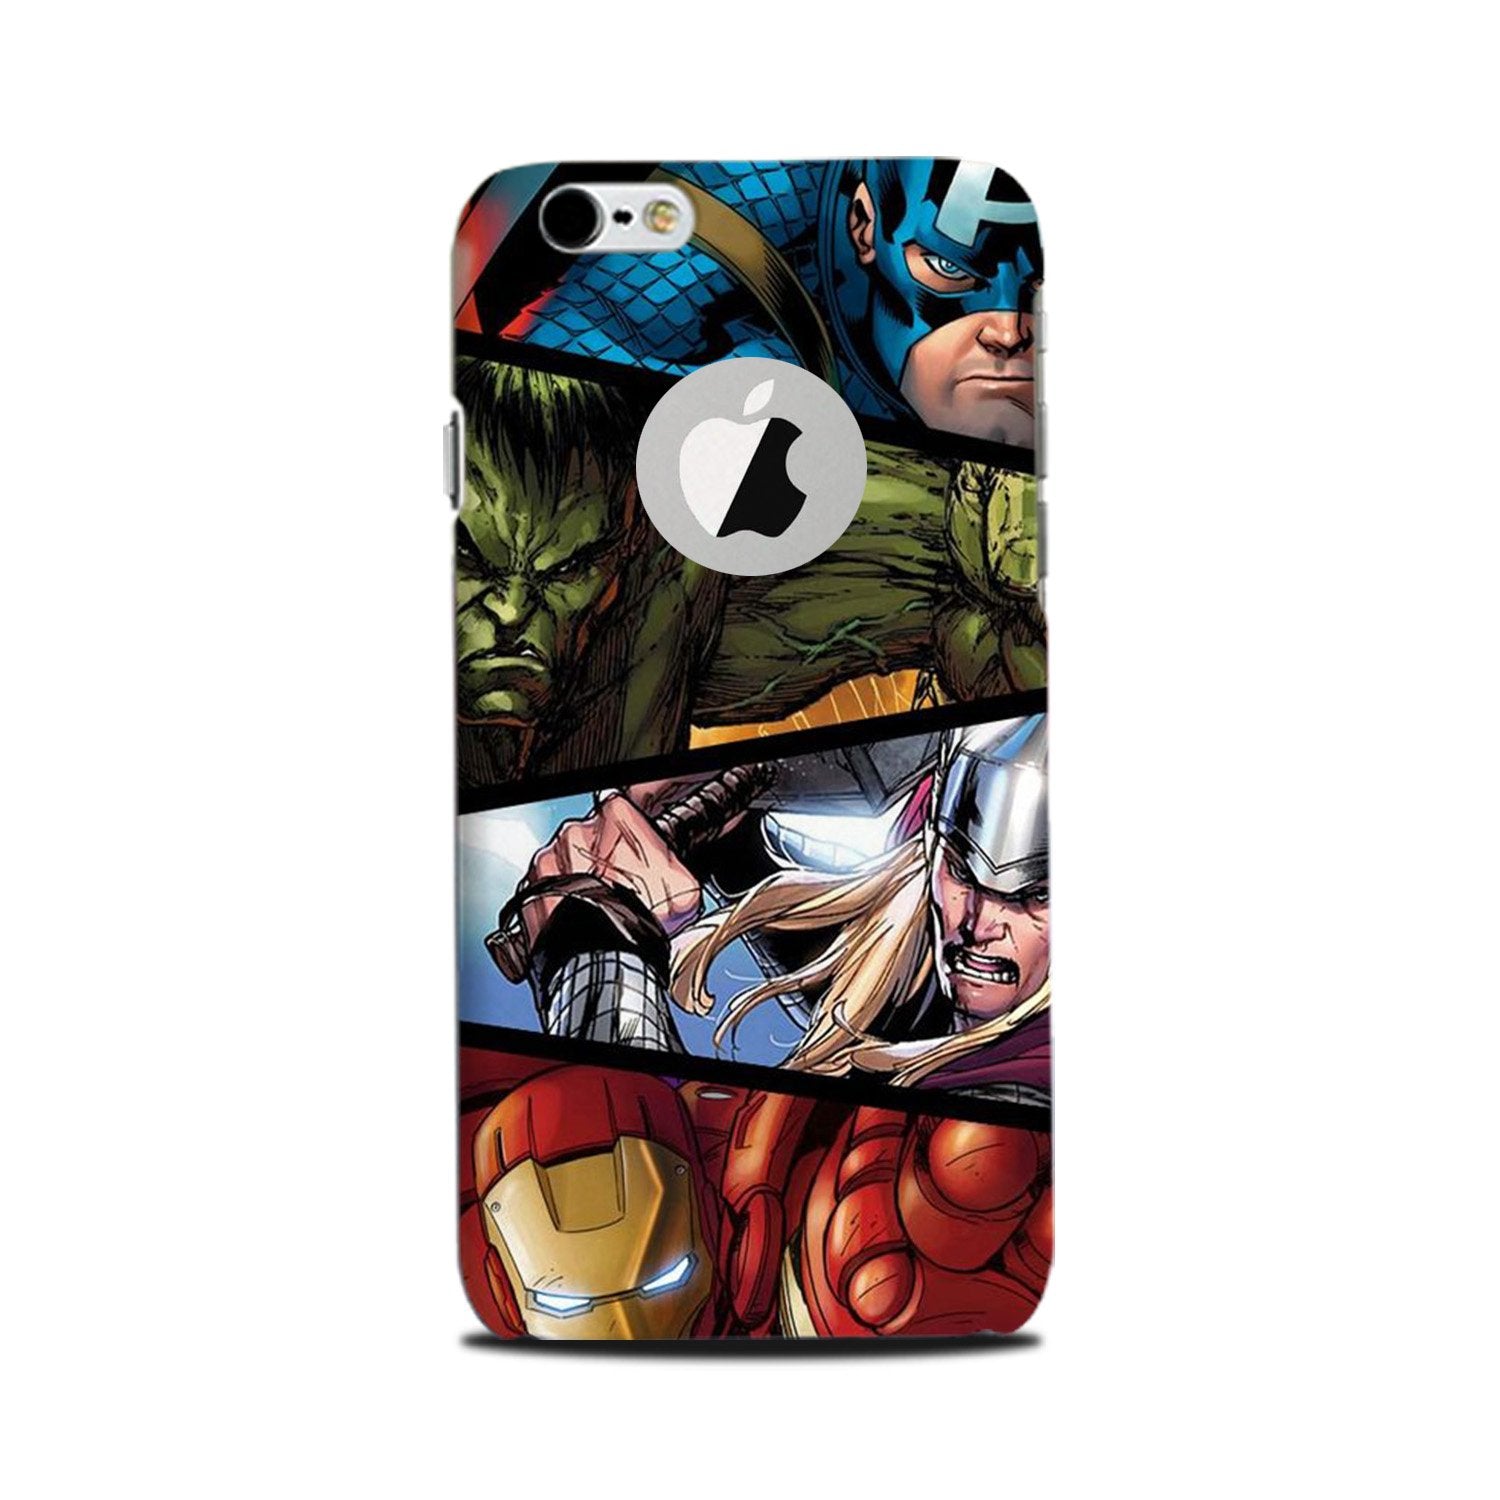 Avengers Superhero Case for iPhone 6 Plus / 6s Plus logo cut (Design - 124)